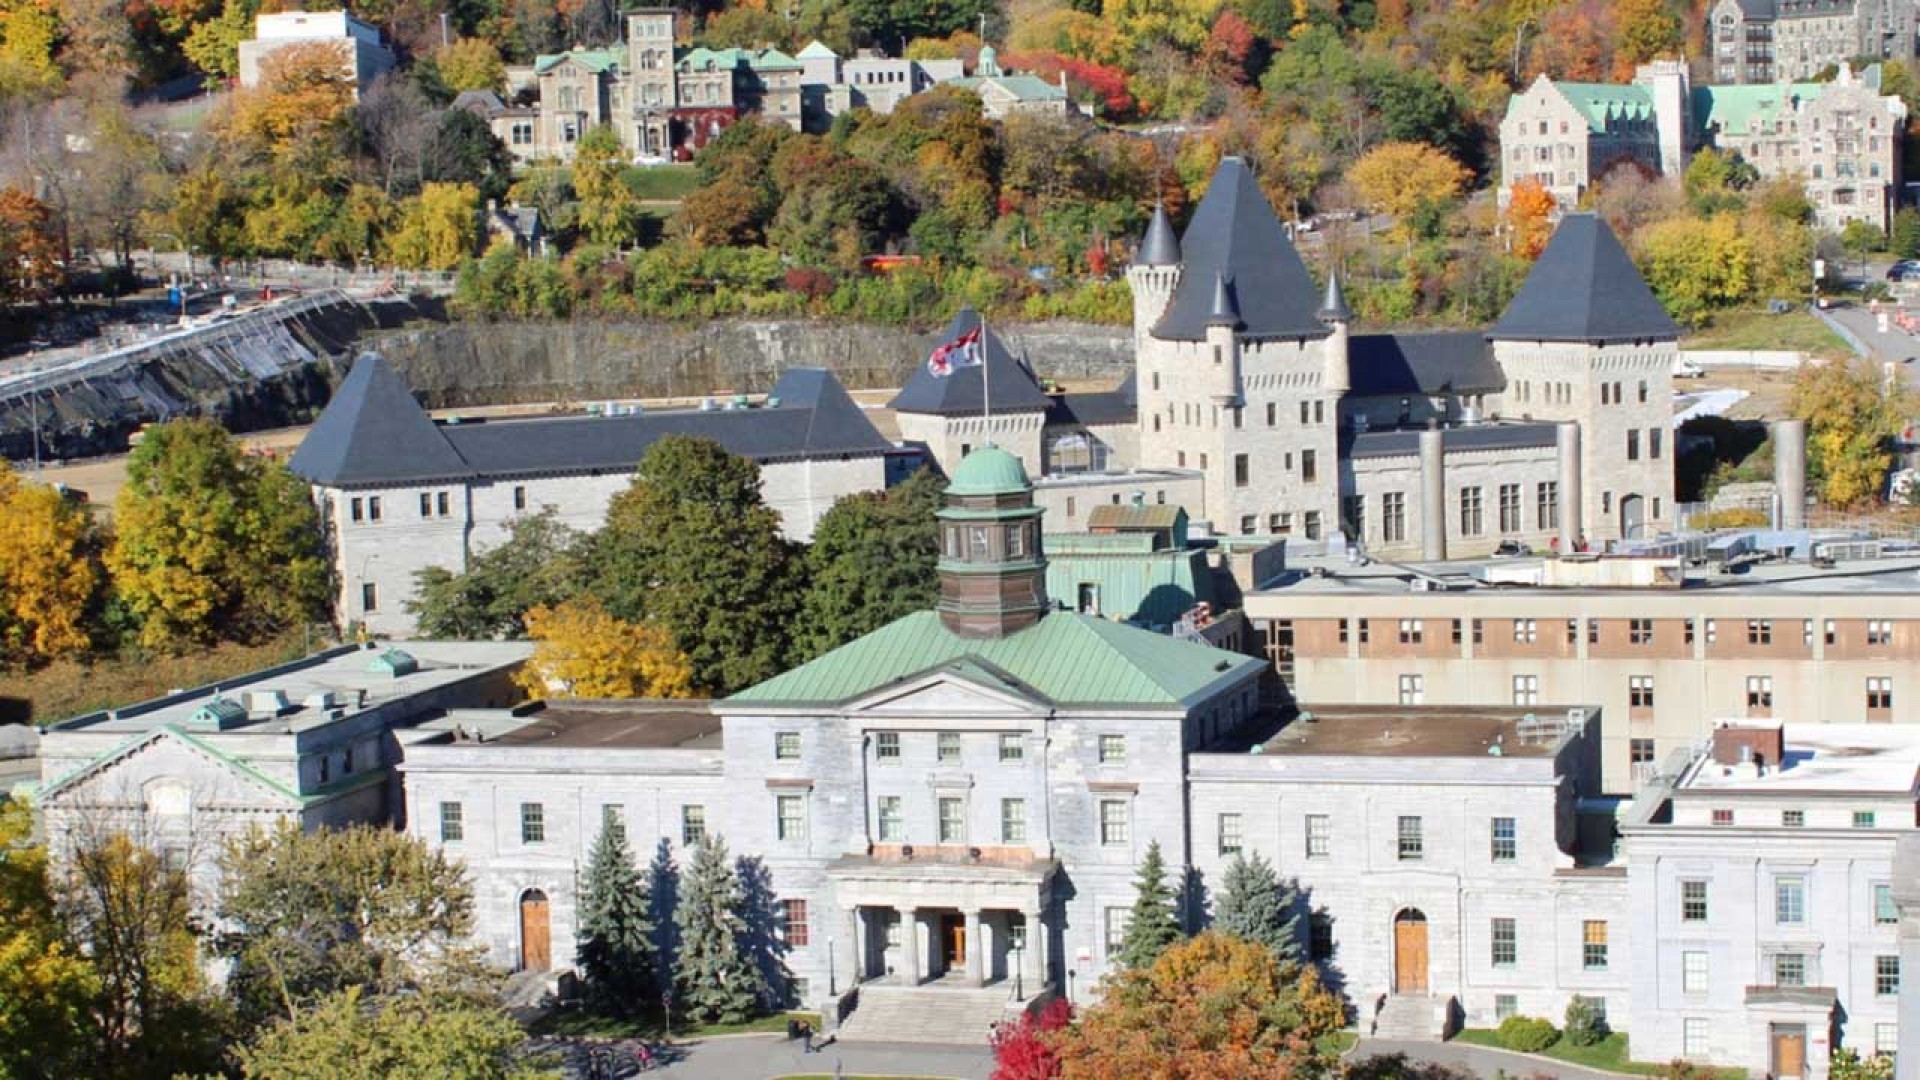 Trải nghiệm tuyệt vời khi du học đại học ở Canada tại McGill University